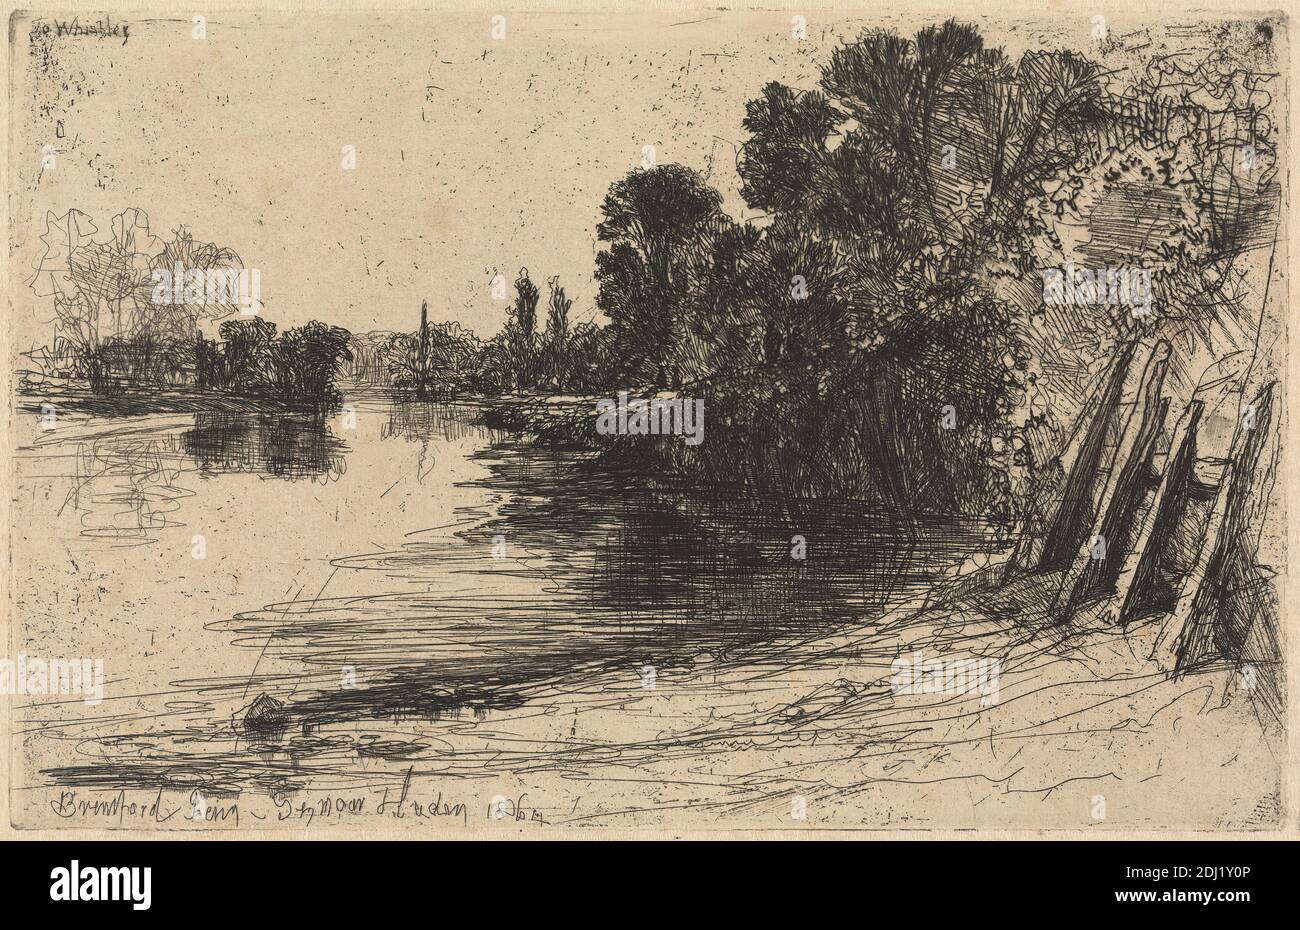 Brentford Ferry, Francis Seymour Haden, 1818–1910, British, 1864, Ätzung und Trockenpunkt, mit Tellerton auf mäßig dickem, mäßig strukturiertem, cremefarbenem Papier, Blatt: 7 x 9 13/16 Zoll (17.8 x 25 cm), Platte: 5 1/2 x 8 9/16 Zoll (13.9 x 21.7 cm), und Bild: 5 1/2 x 8 9/16 Zoll (13.9 x 21.7 cm), Banken, Abstand, Figuren, Laub, Landschaft, Menschen, Pfosten, Requisiten, Reflexionen, Fluss, Ufer (Landform), Streben, Bäume, Wasser, Brentford, England, Europa, Groß-London, Themse, Vereinigtes Königreich Stockfoto